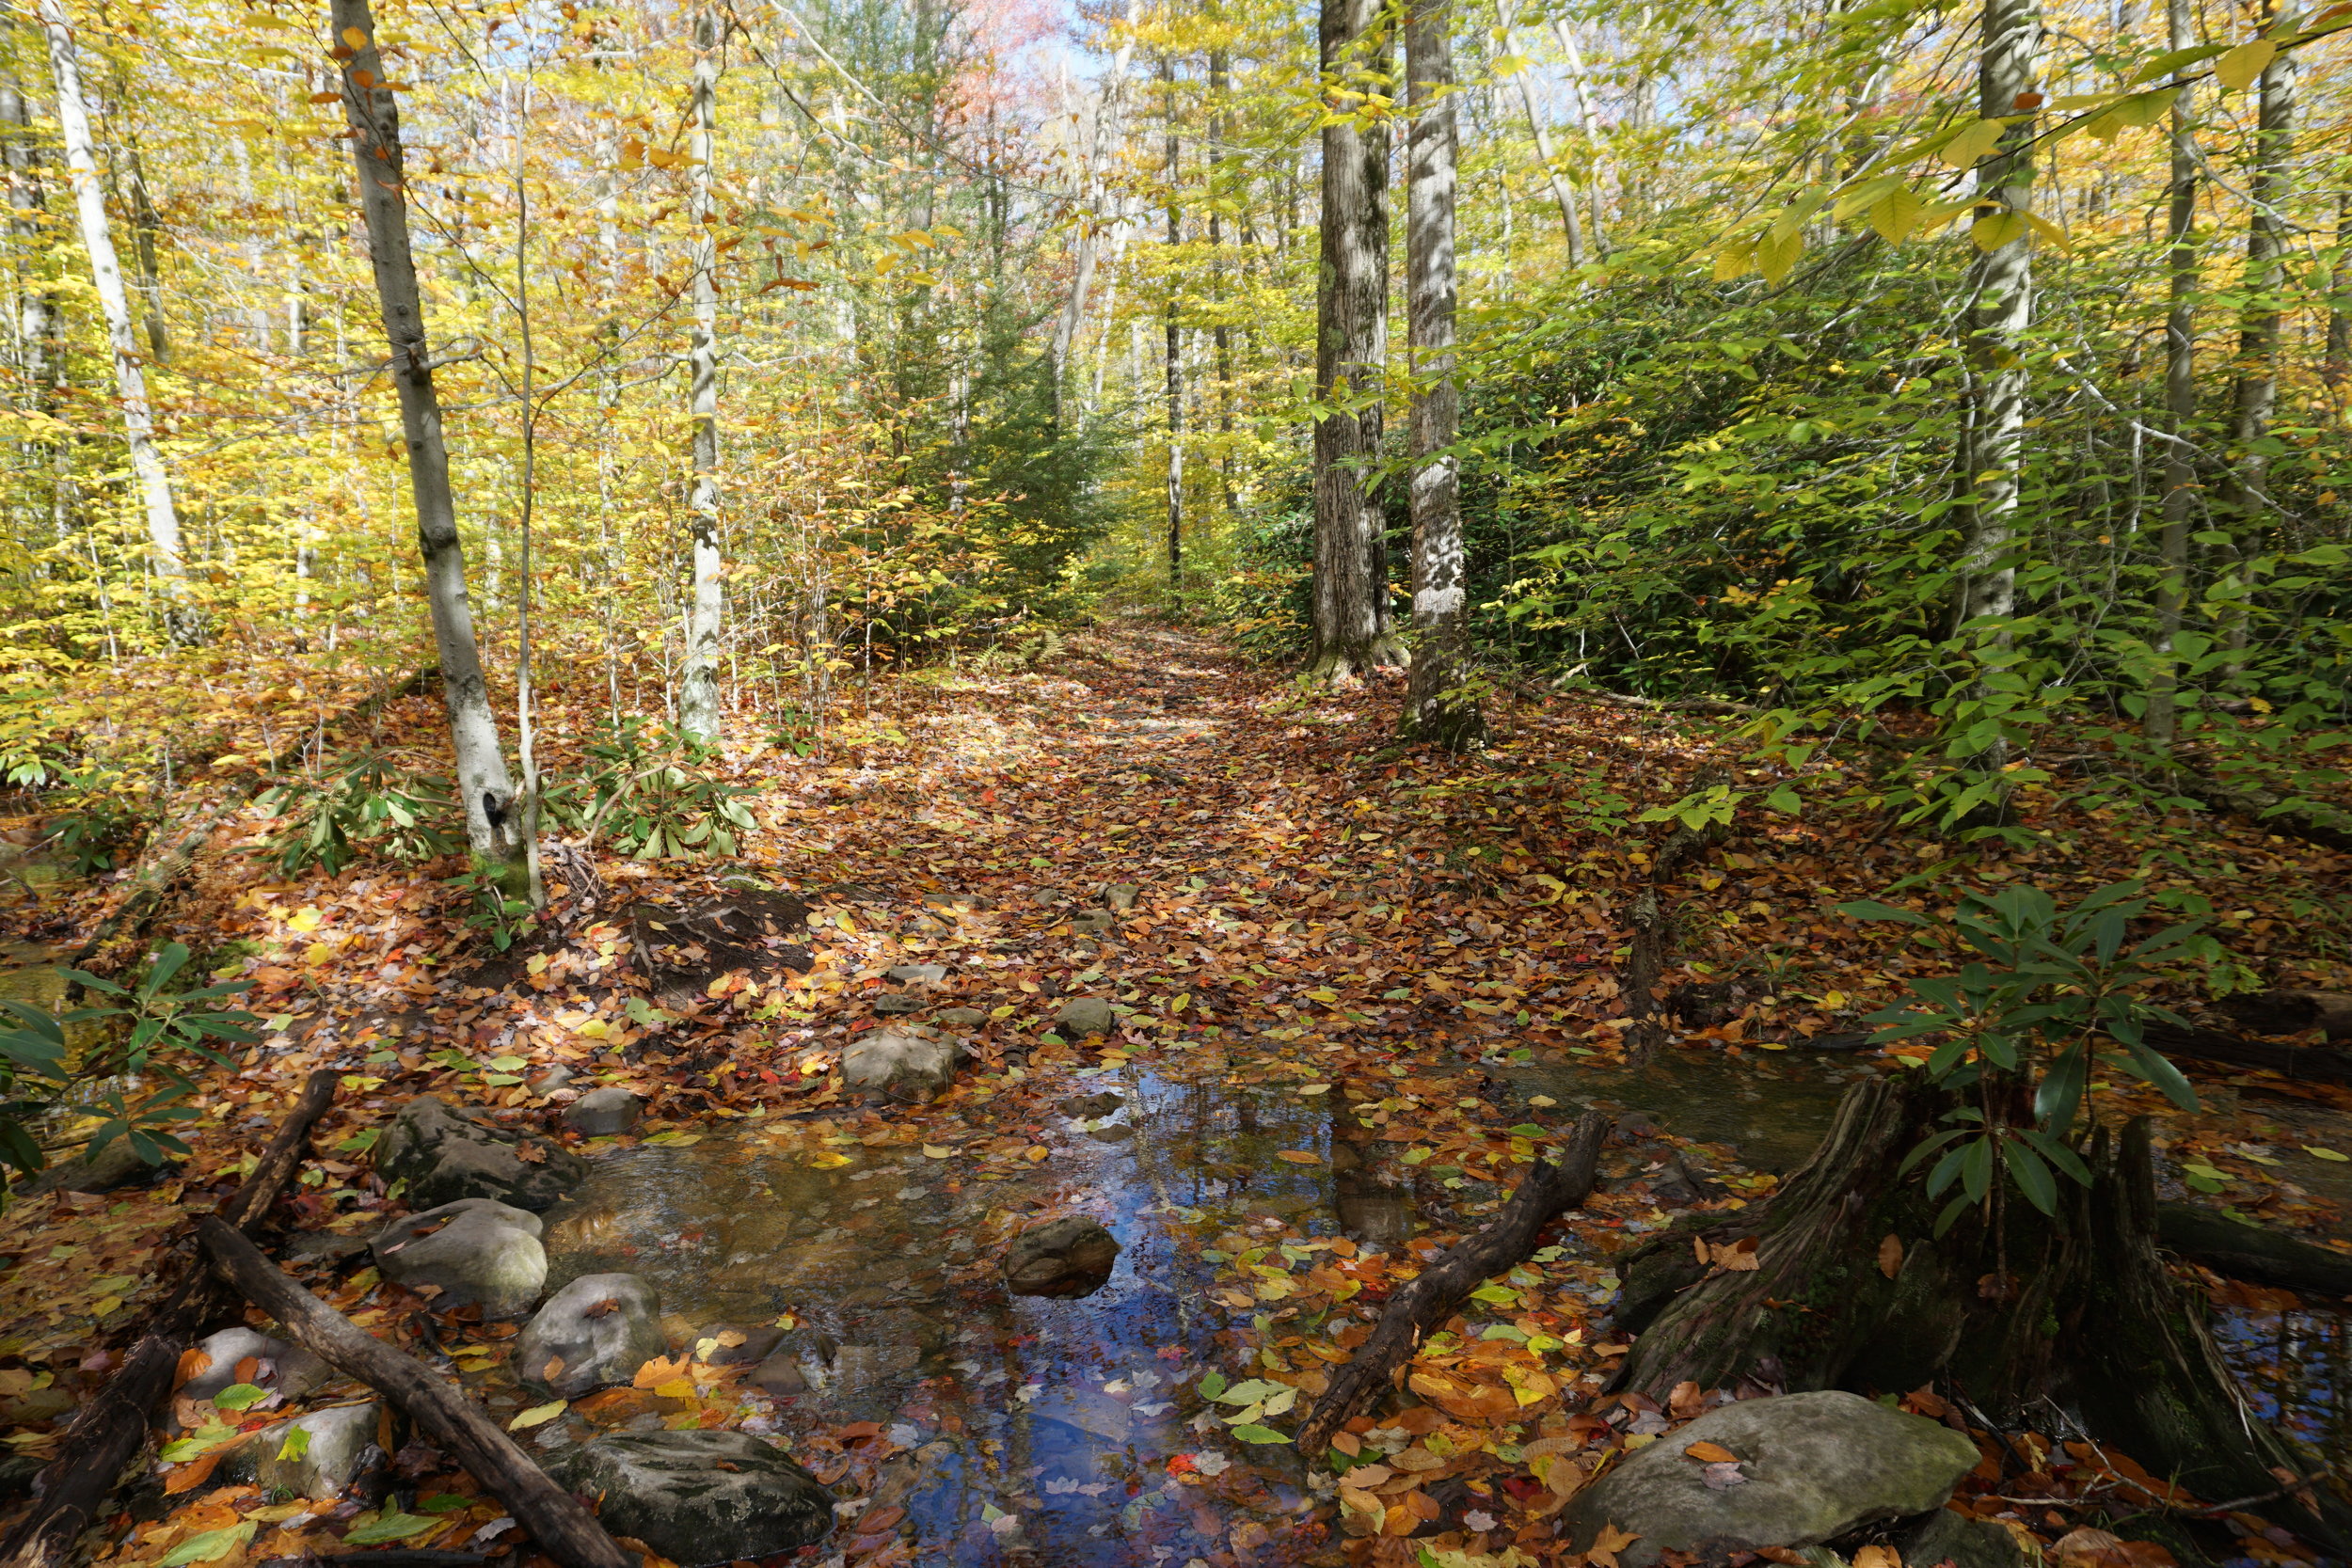 Fall foliage in Poconos mountains